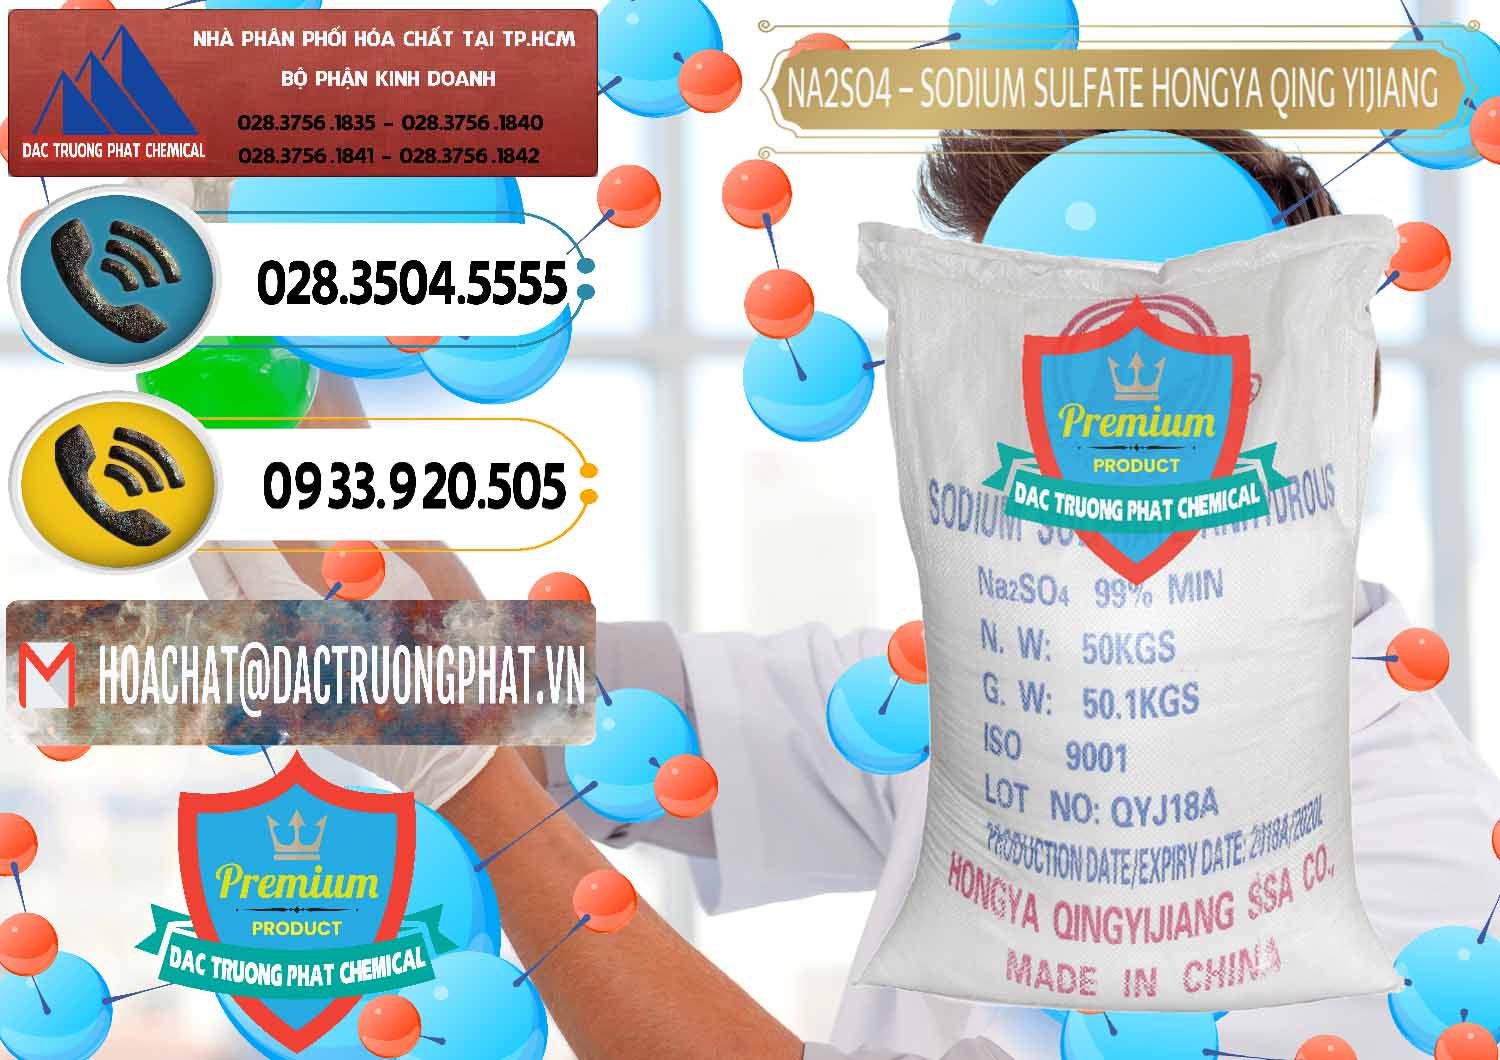 Đơn vị chuyên nhập khẩu và bán Sodium Sulphate - Muối Sunfat Na2SO4 Logo Cánh Bườm Hongya Qing Yi Trung Quốc China - 0098 - Công ty bán _ cung cấp hóa chất tại TP.HCM - hoachatdetnhuom.vn